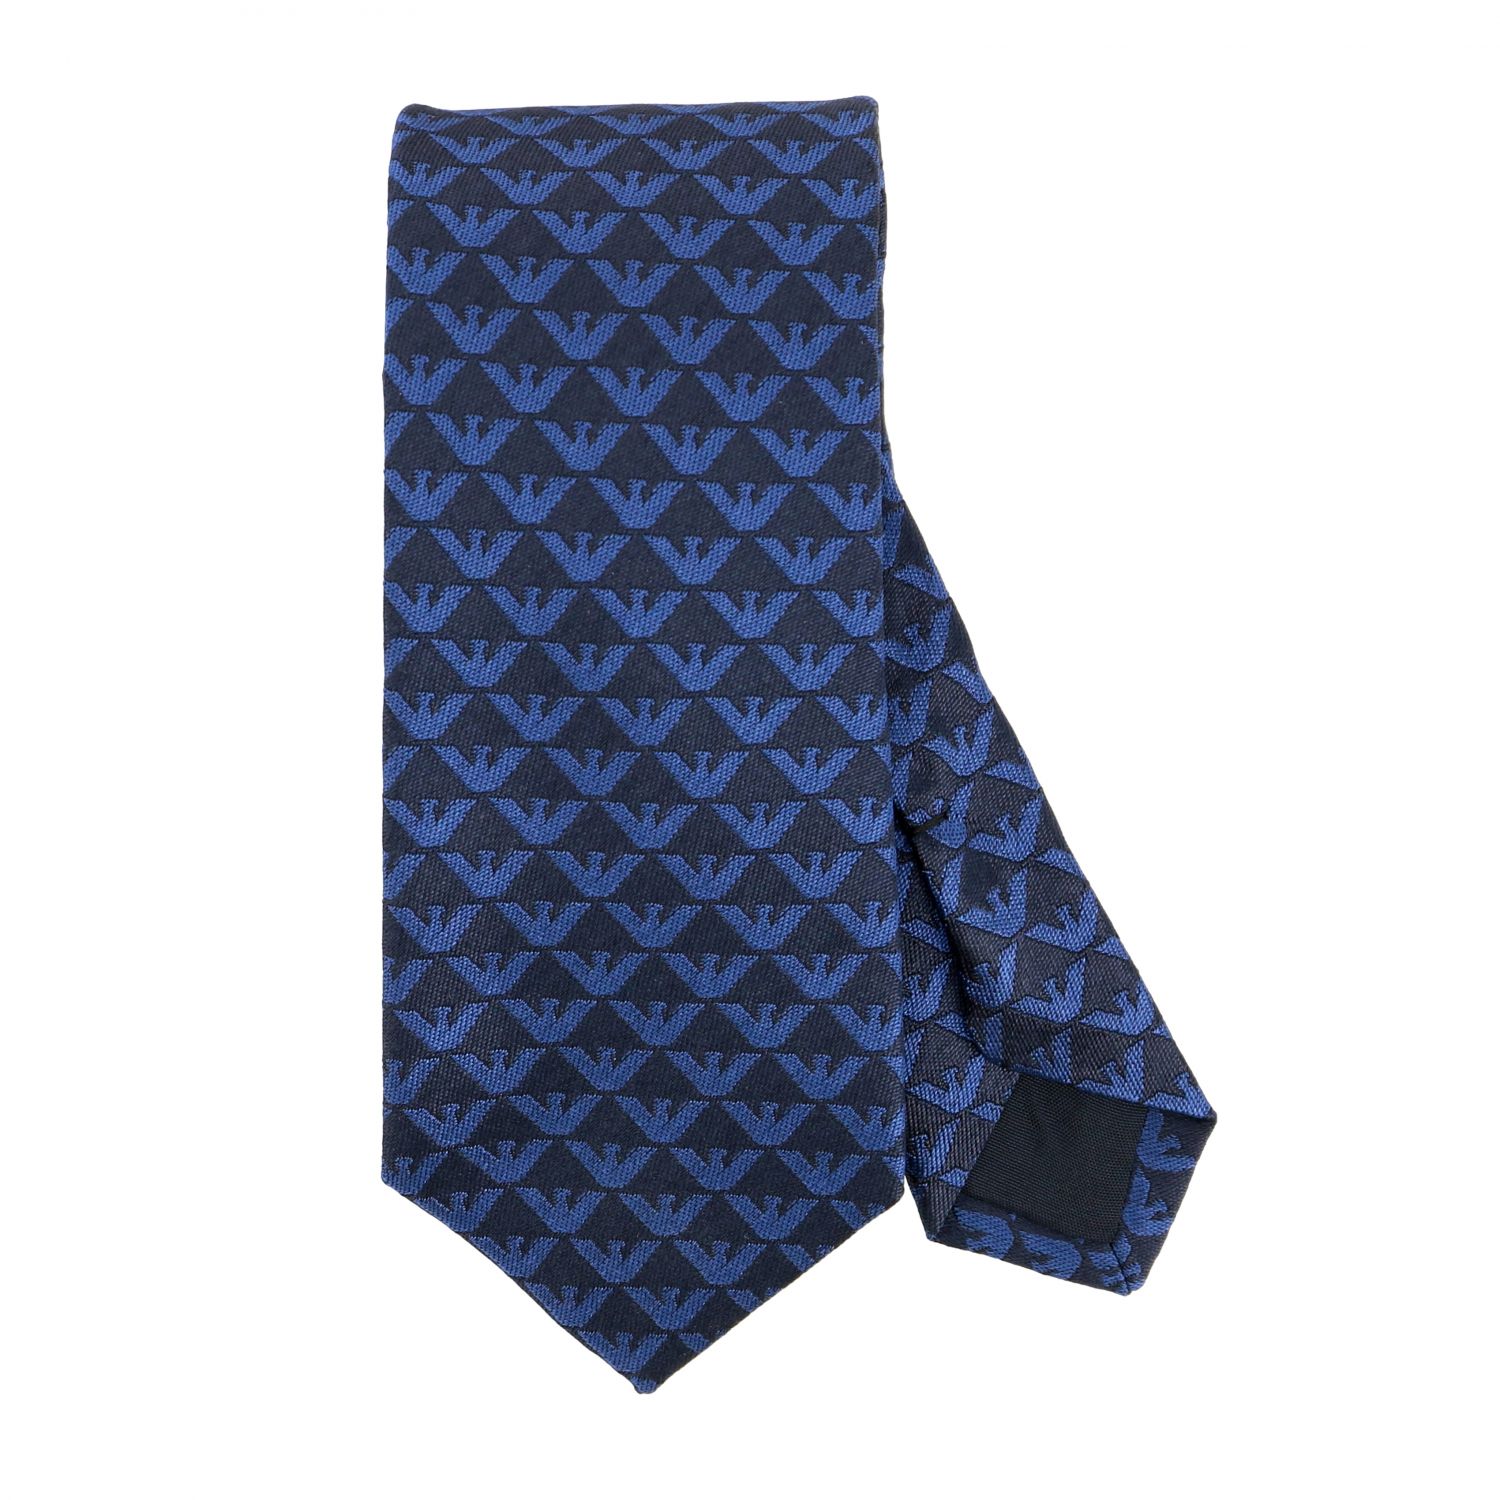 Emporio Armani silk tie with all over 